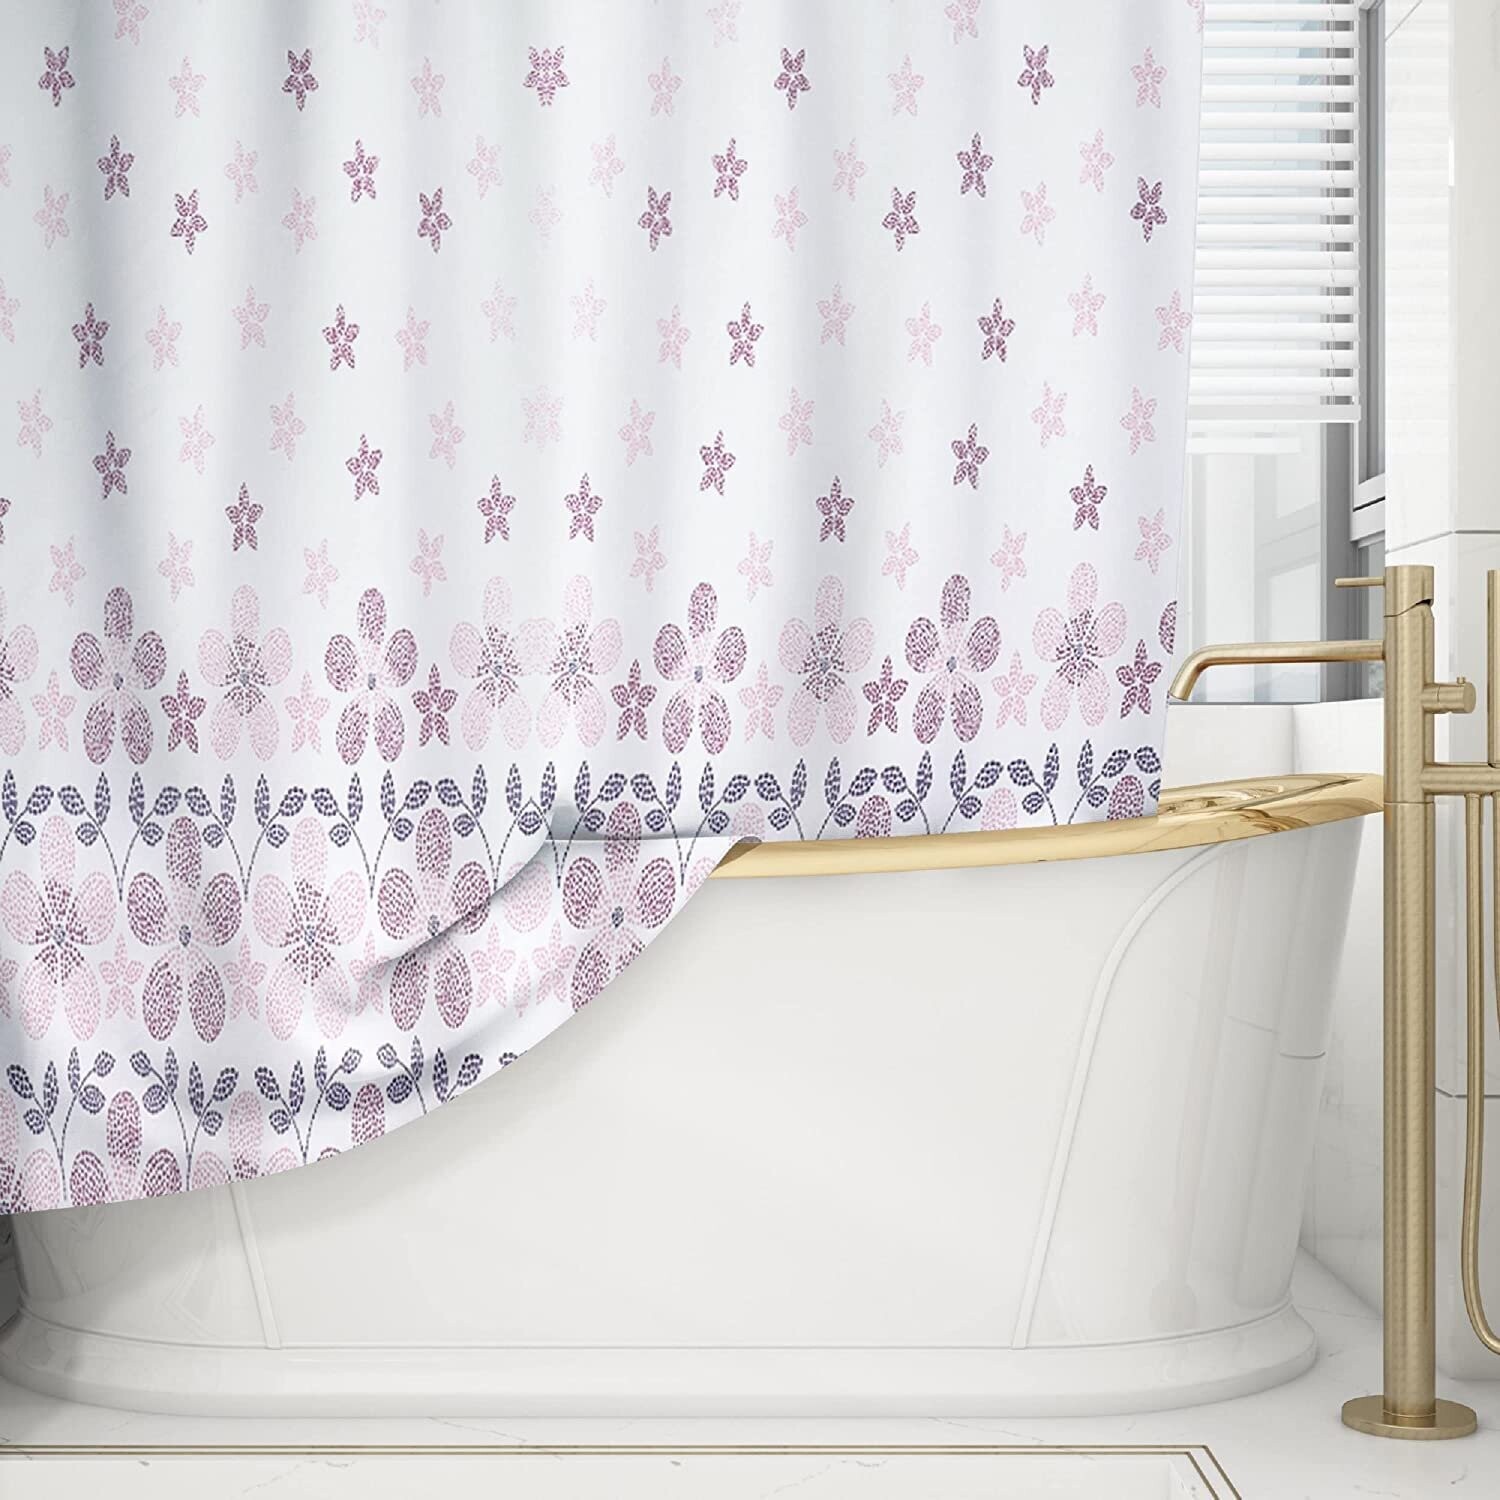 Cortina de baño impermeable y bañera , Resistente al Moho, Anti Moho y Impermeables 100% Polyester Modelo, Flores en Bicolor Rosa